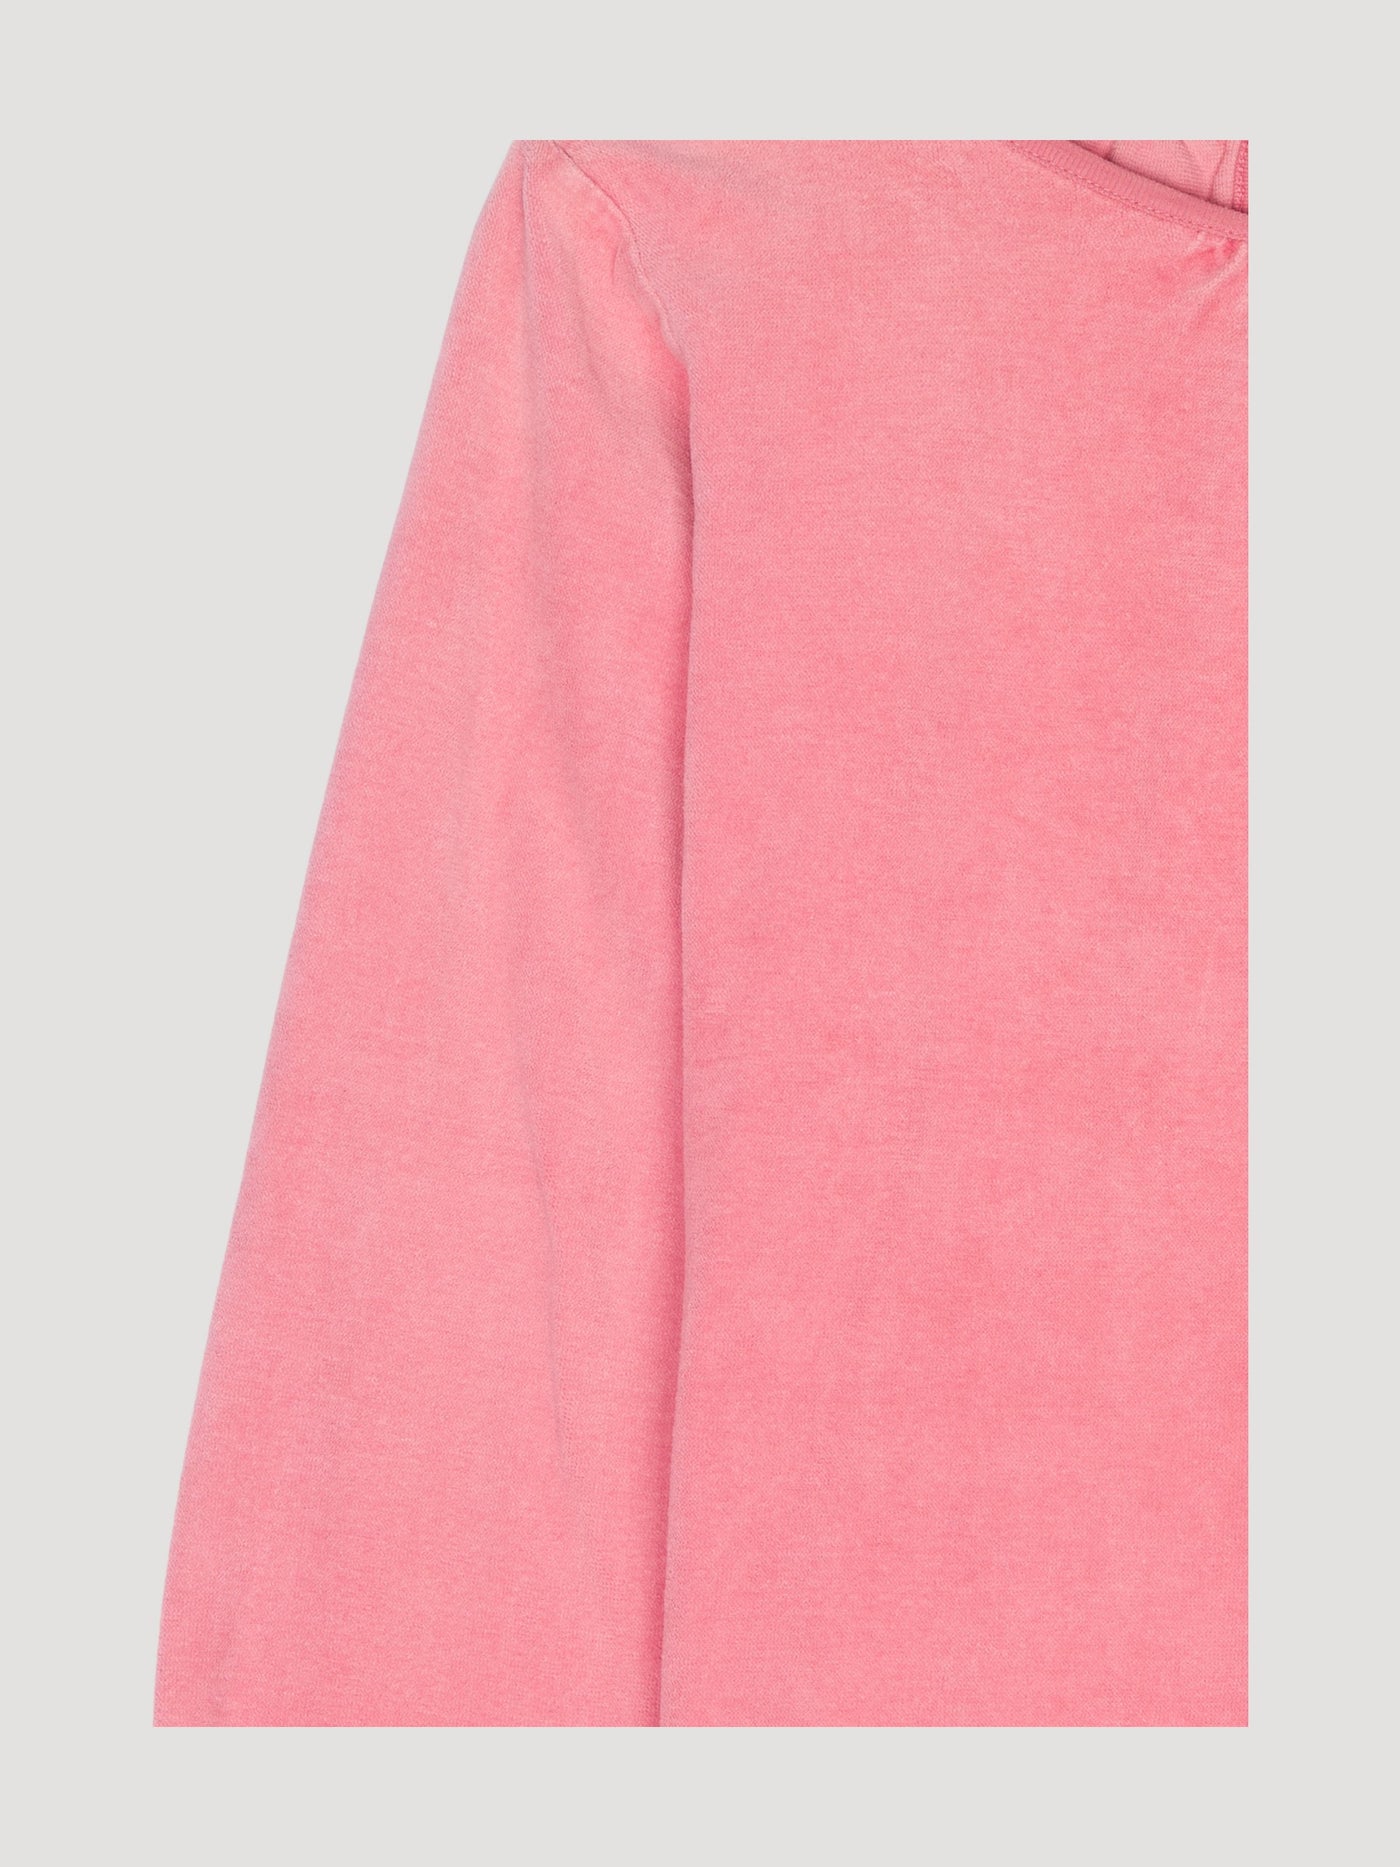 Secondhand Nicki Sweatshirt aus reiner Bio-Baumwolle